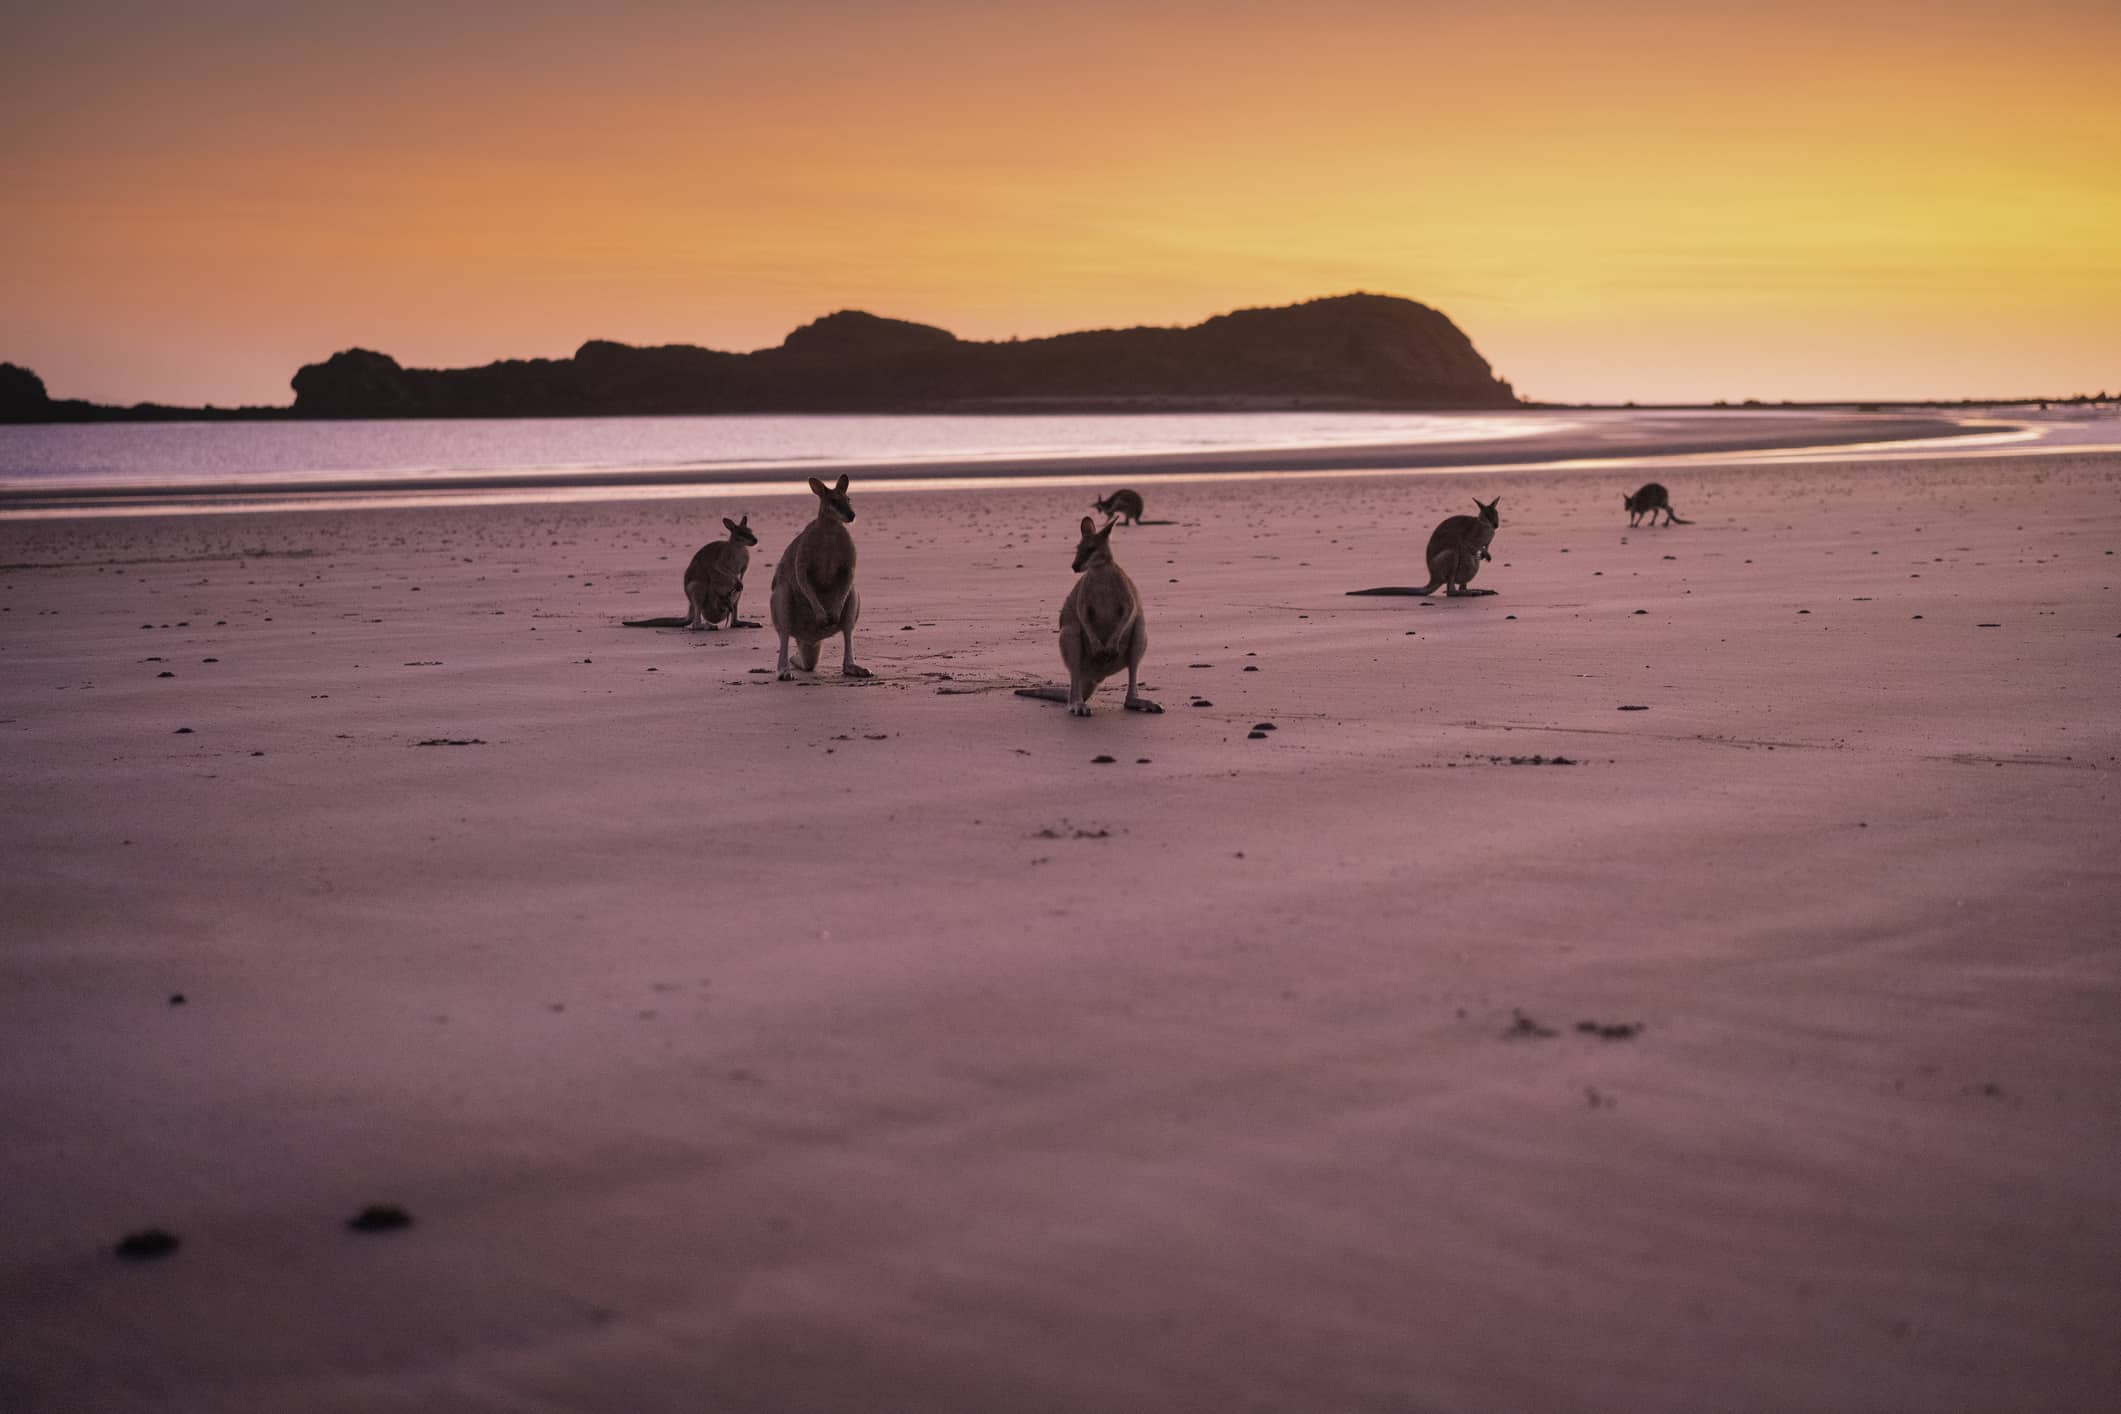 kangaroos on an Australian beach